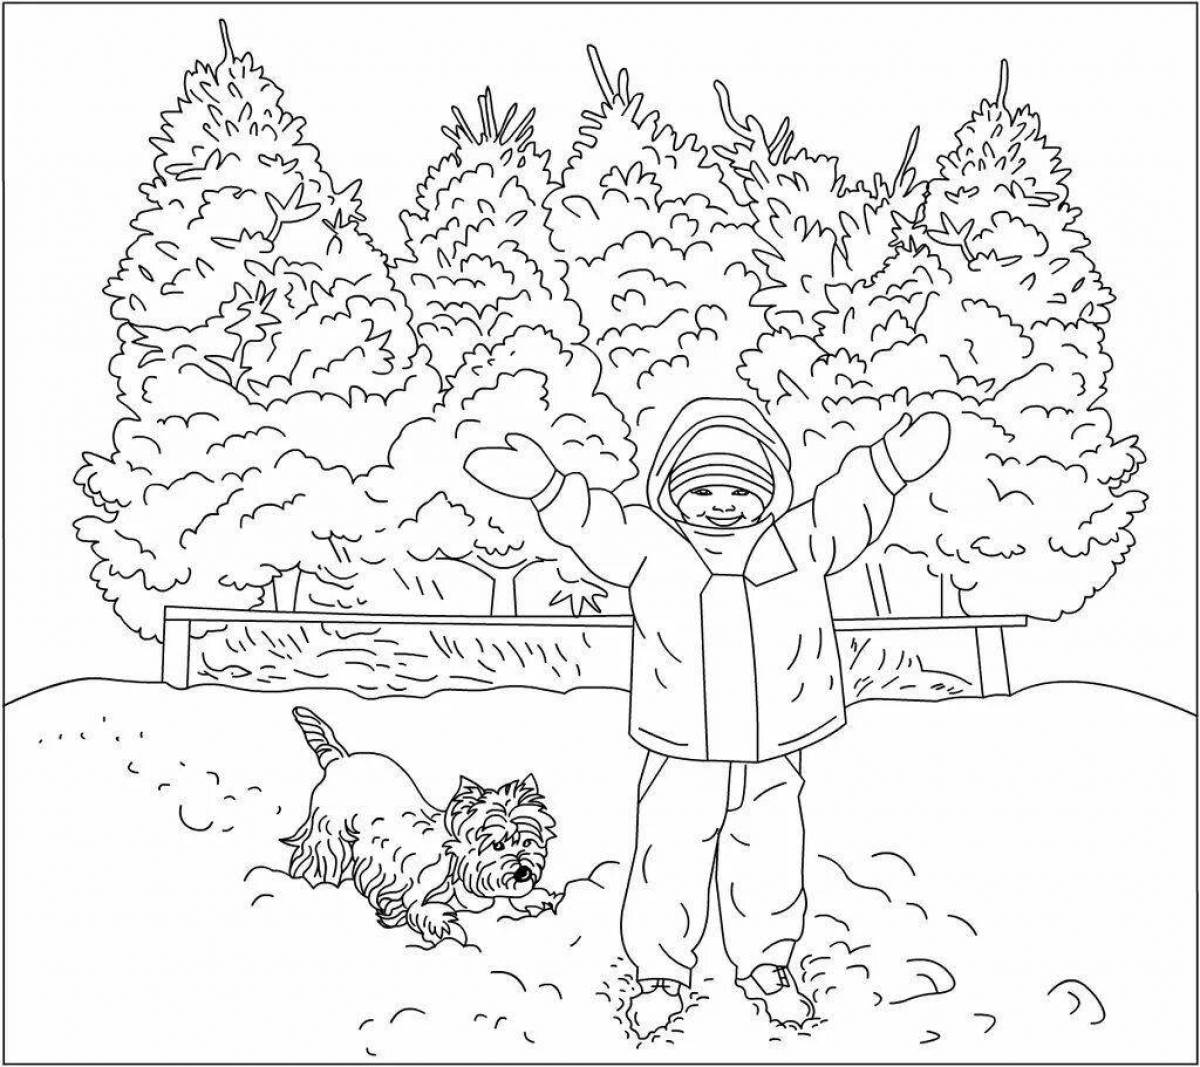 Scenic winter walk coloring book